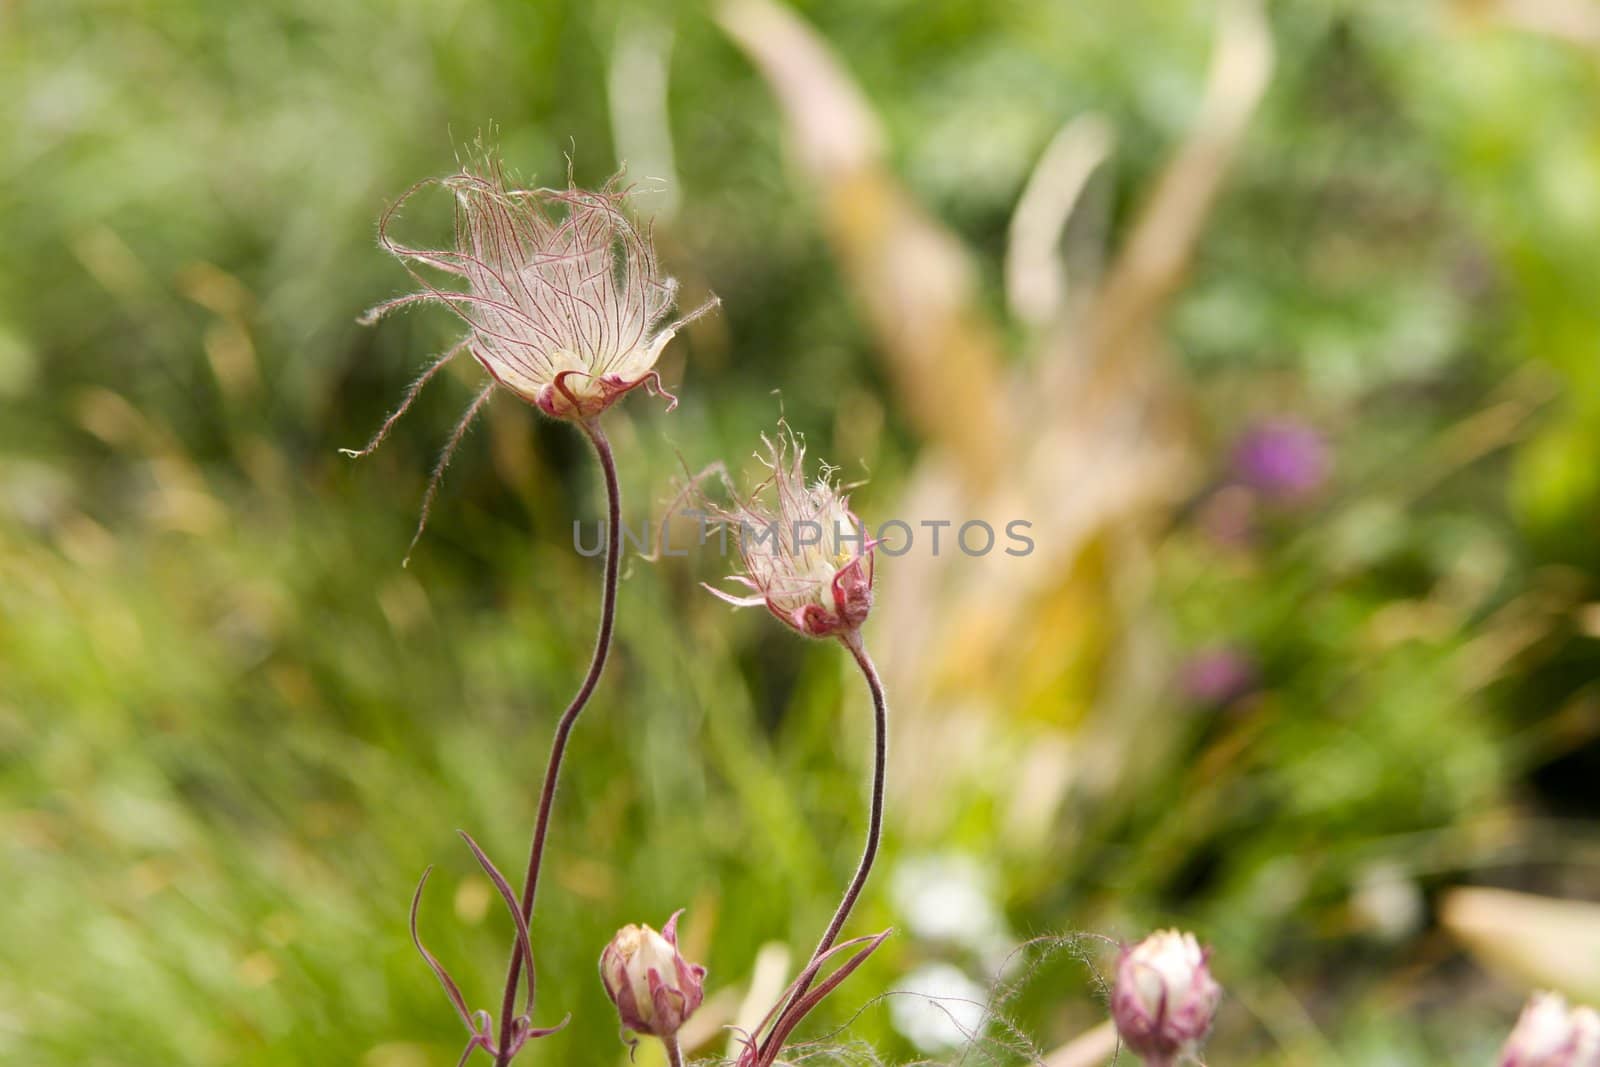 Fuzzy flower in a field.